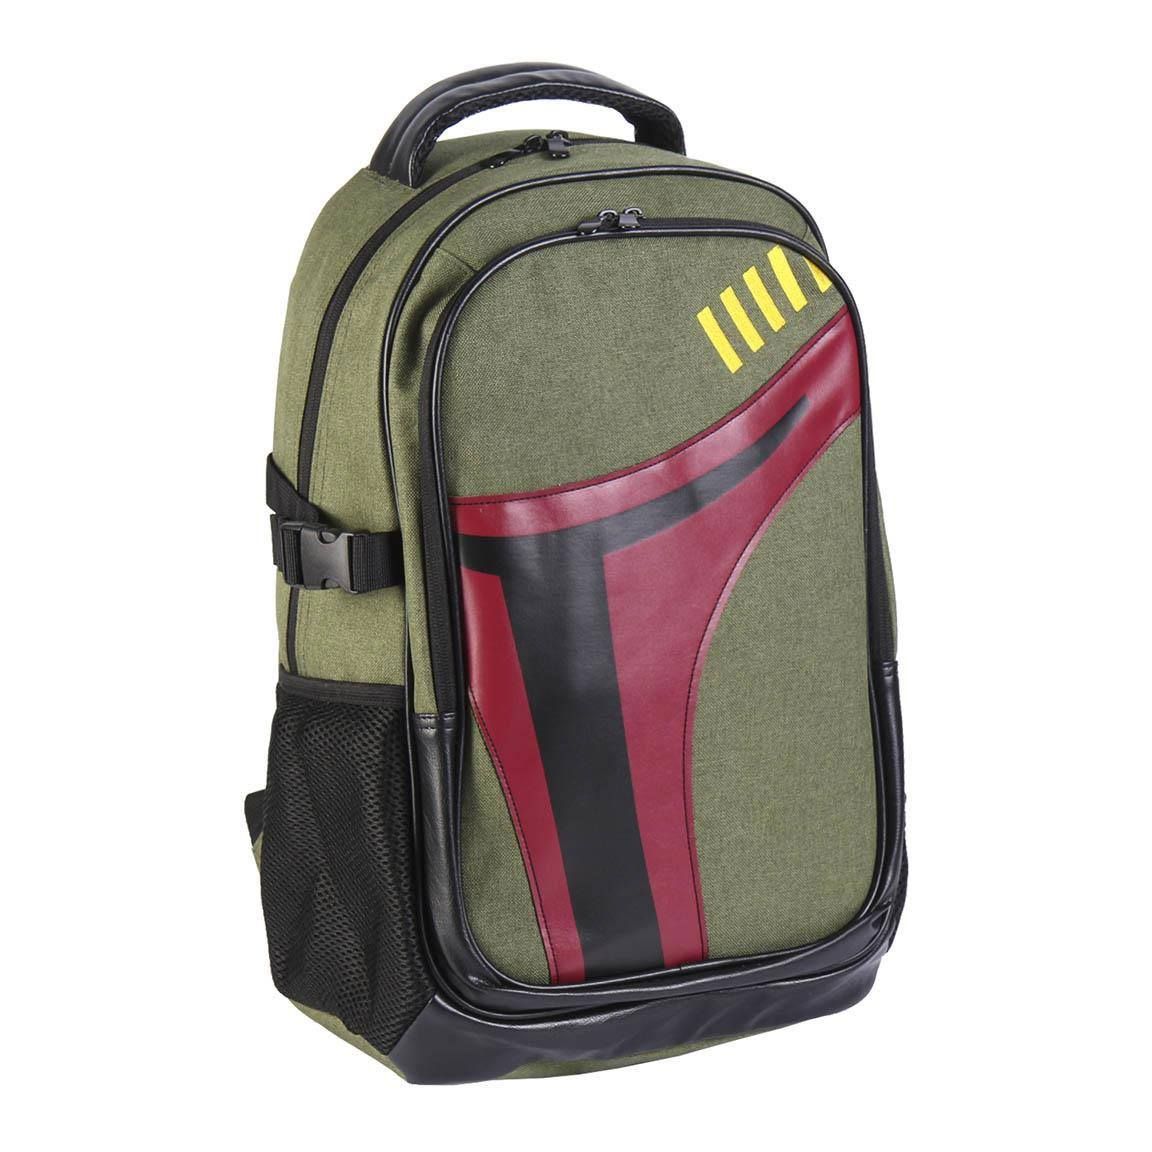 Star Wars Backpack Boba Fett Cerdá